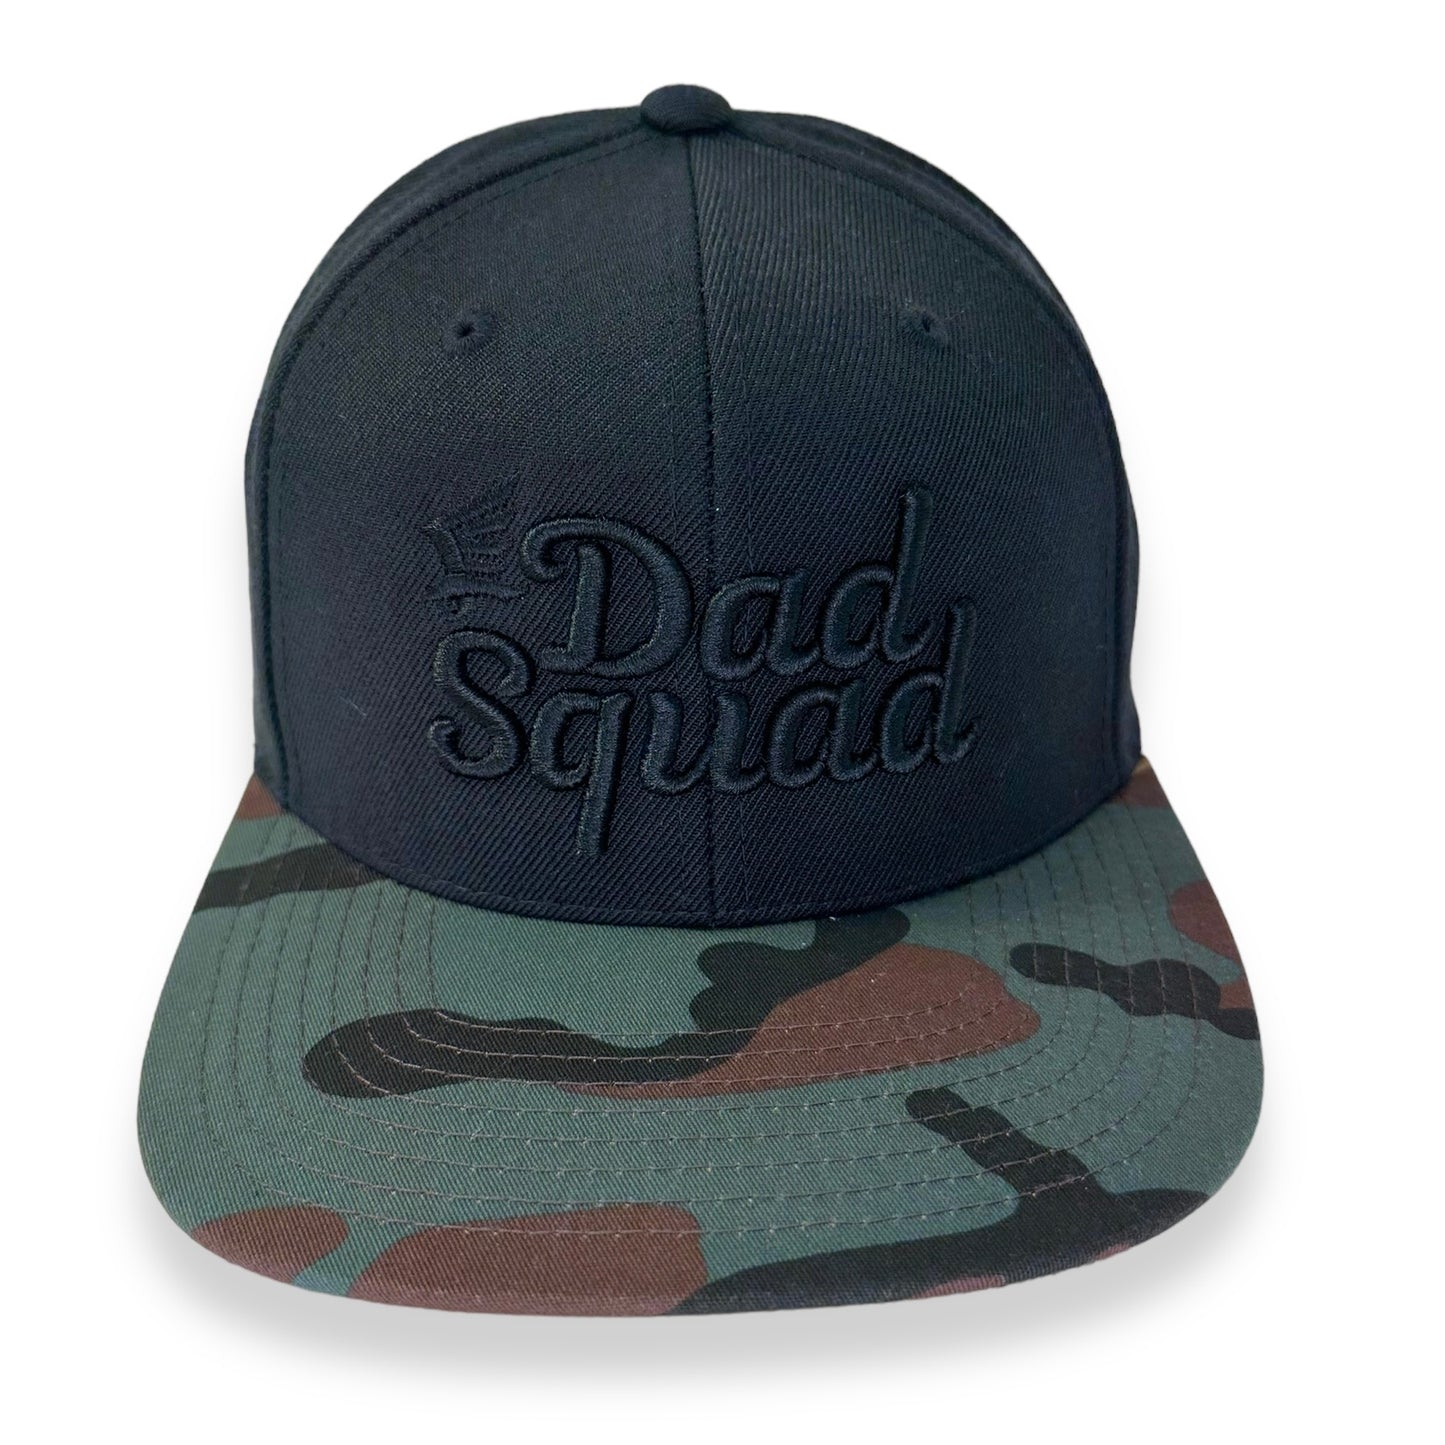 Dad Squad Flat Bill Cap - Black/Camo